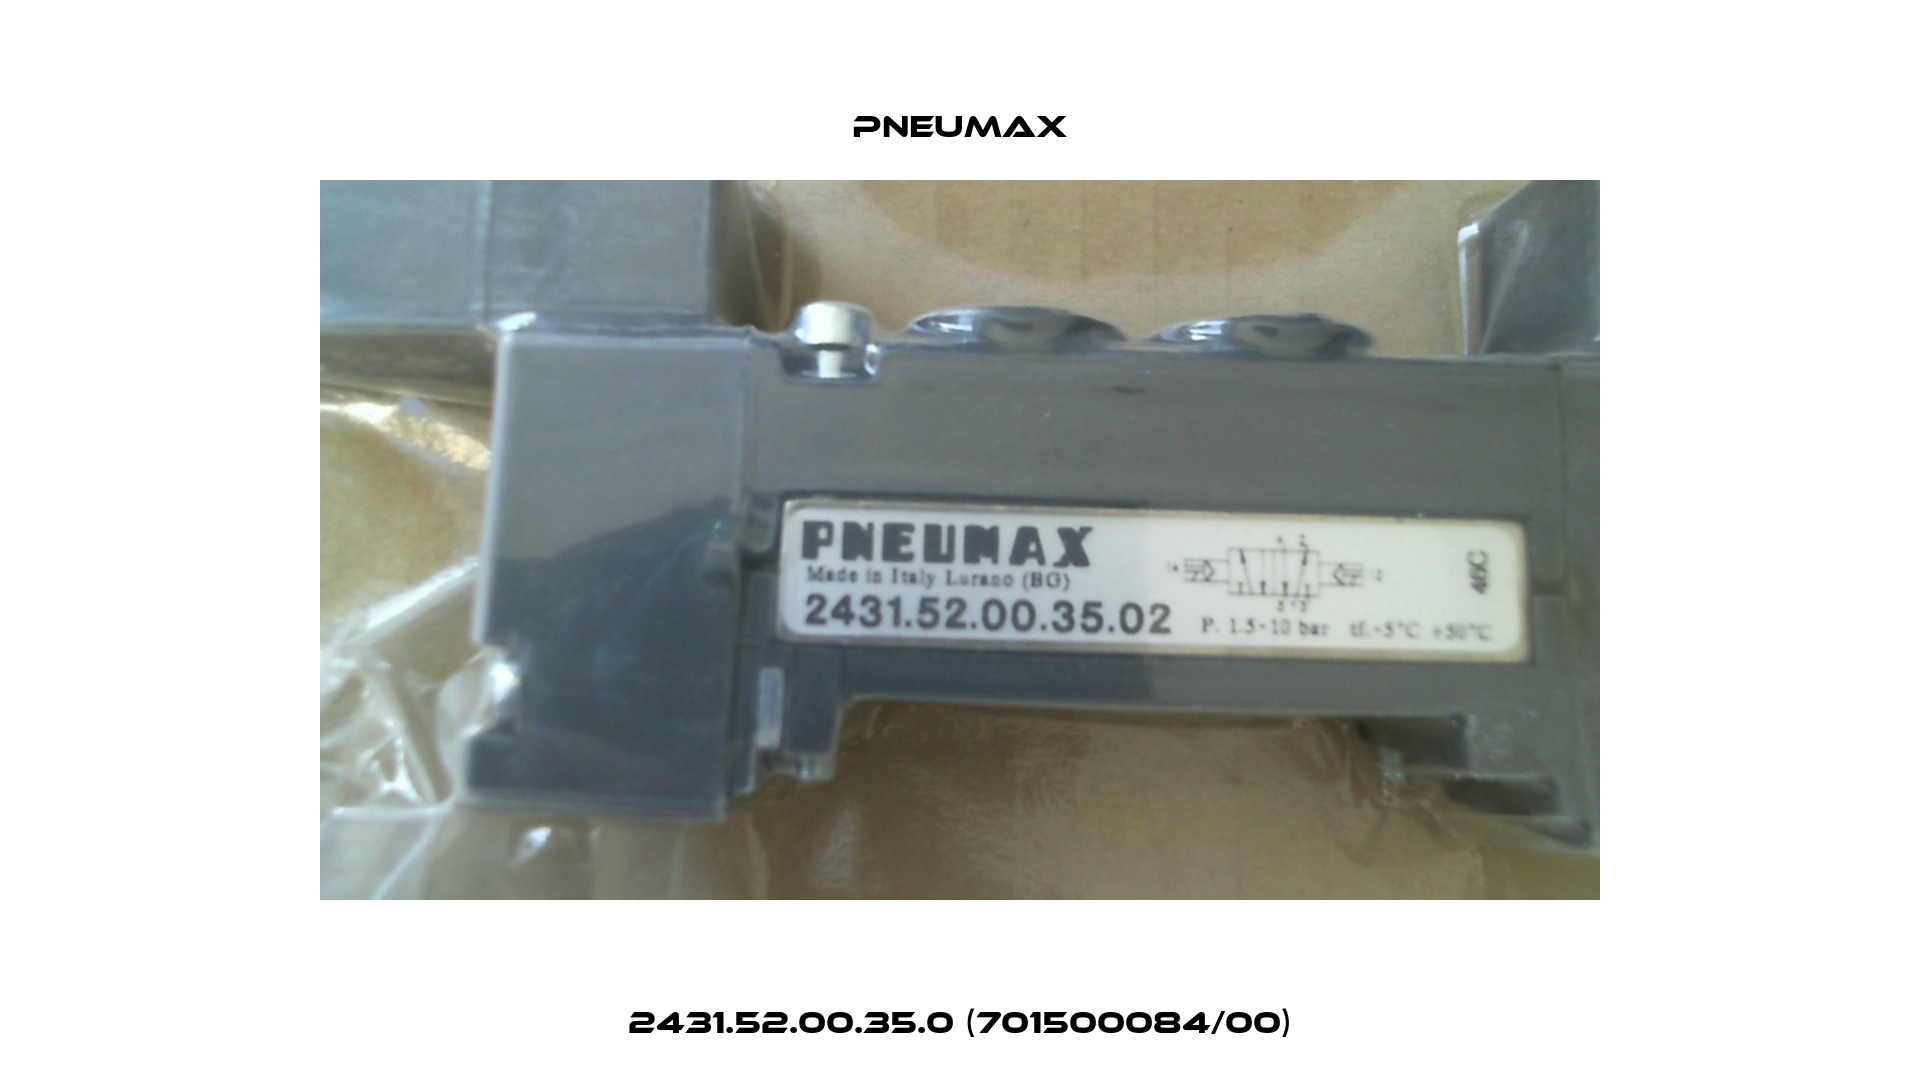 2431.52.00.35.0 (701500084/00) Pneumax